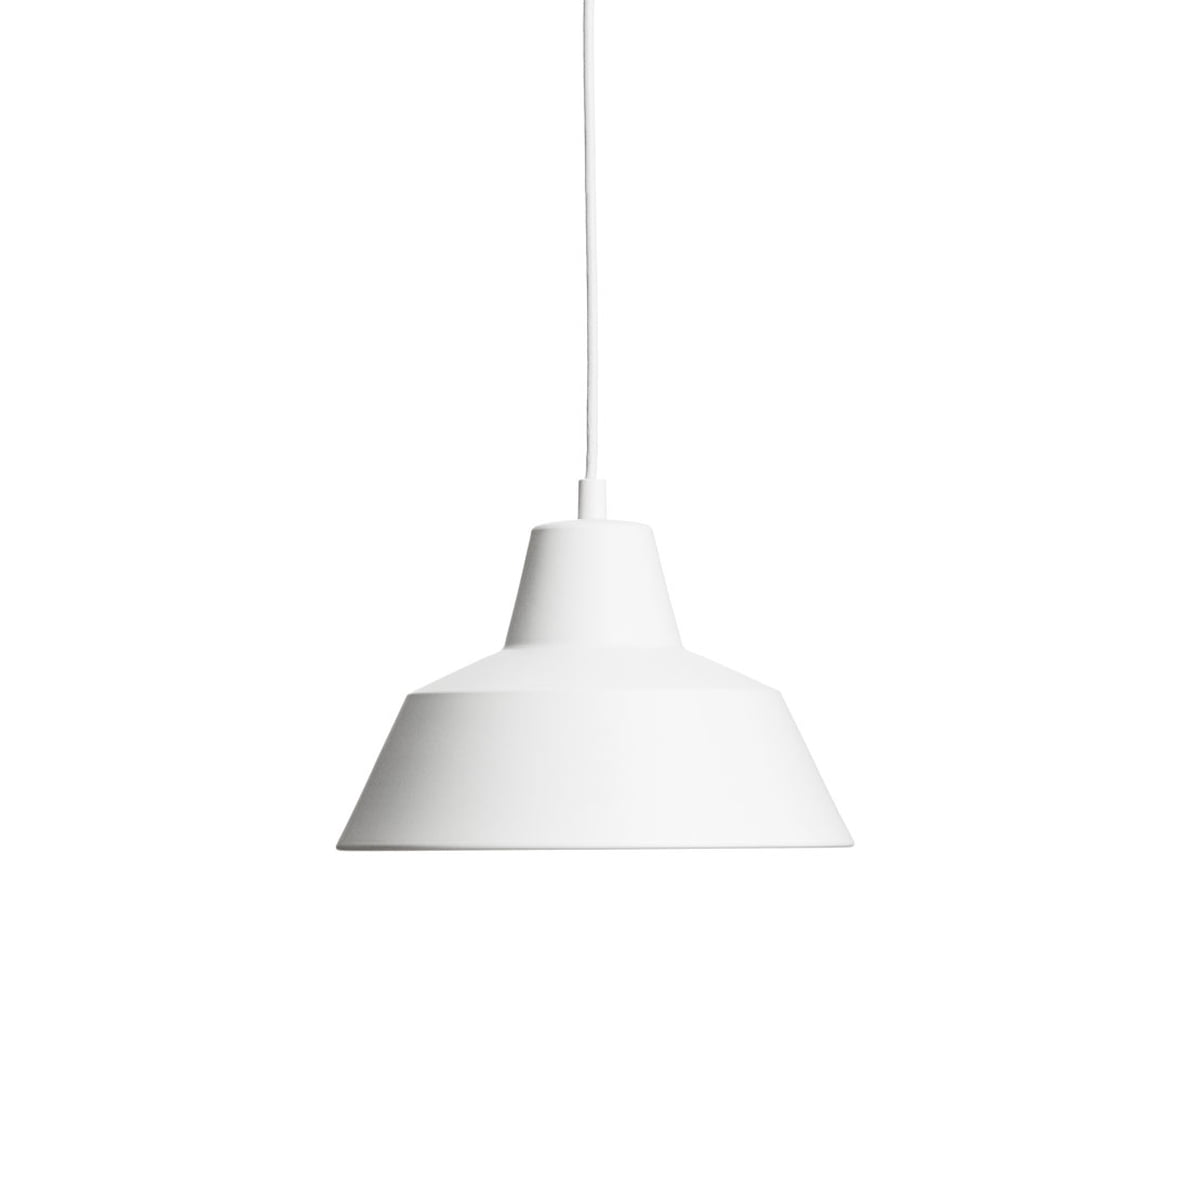 Made by Hand - Workshop Lamp W2, mattweiß / weiß